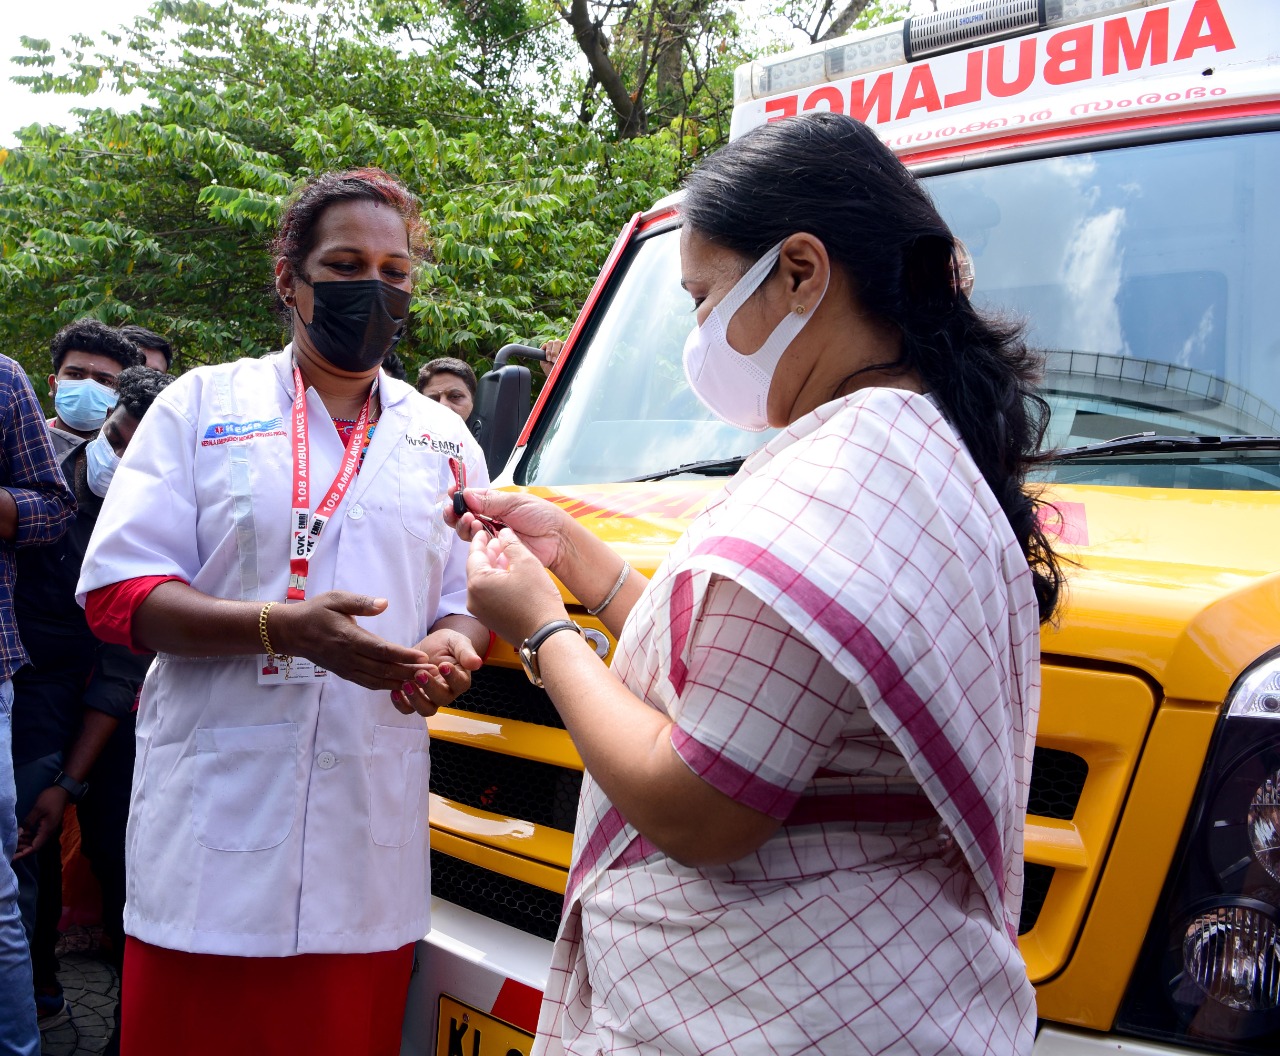 Kottayam Deepa mohan as 108 ambulance driver  Deepa mohan as 108 ambulance driver received key from Health Minister  Deepamol received kaniv 108 ambulance key from veena george  കനിവ് 108 ആംബുലന്‍സ് ഡ്രൈവറായി ദീപമോഹൻ  ആരോഗ്യമന്ത്രി വീണ ജോർജിൽ നിന്ന് താക്കോല്‍ ഏറ്റുവാങ്ങി ദീപ  വനിതാദിനത്തില്‍ ആംബുലന്‍സ് ഡ്രൈവറായി ദീപമോഹൻ  108 ആംബുലന്‍സ് ഡ്രൈവറായി ആദ്യവനിത  കോട്ടയം മേമുറി പാലപ്പറമ്പില്‍ വീട്ടില്‍ ദീപ  first woman deepa mohan became ambulance driver